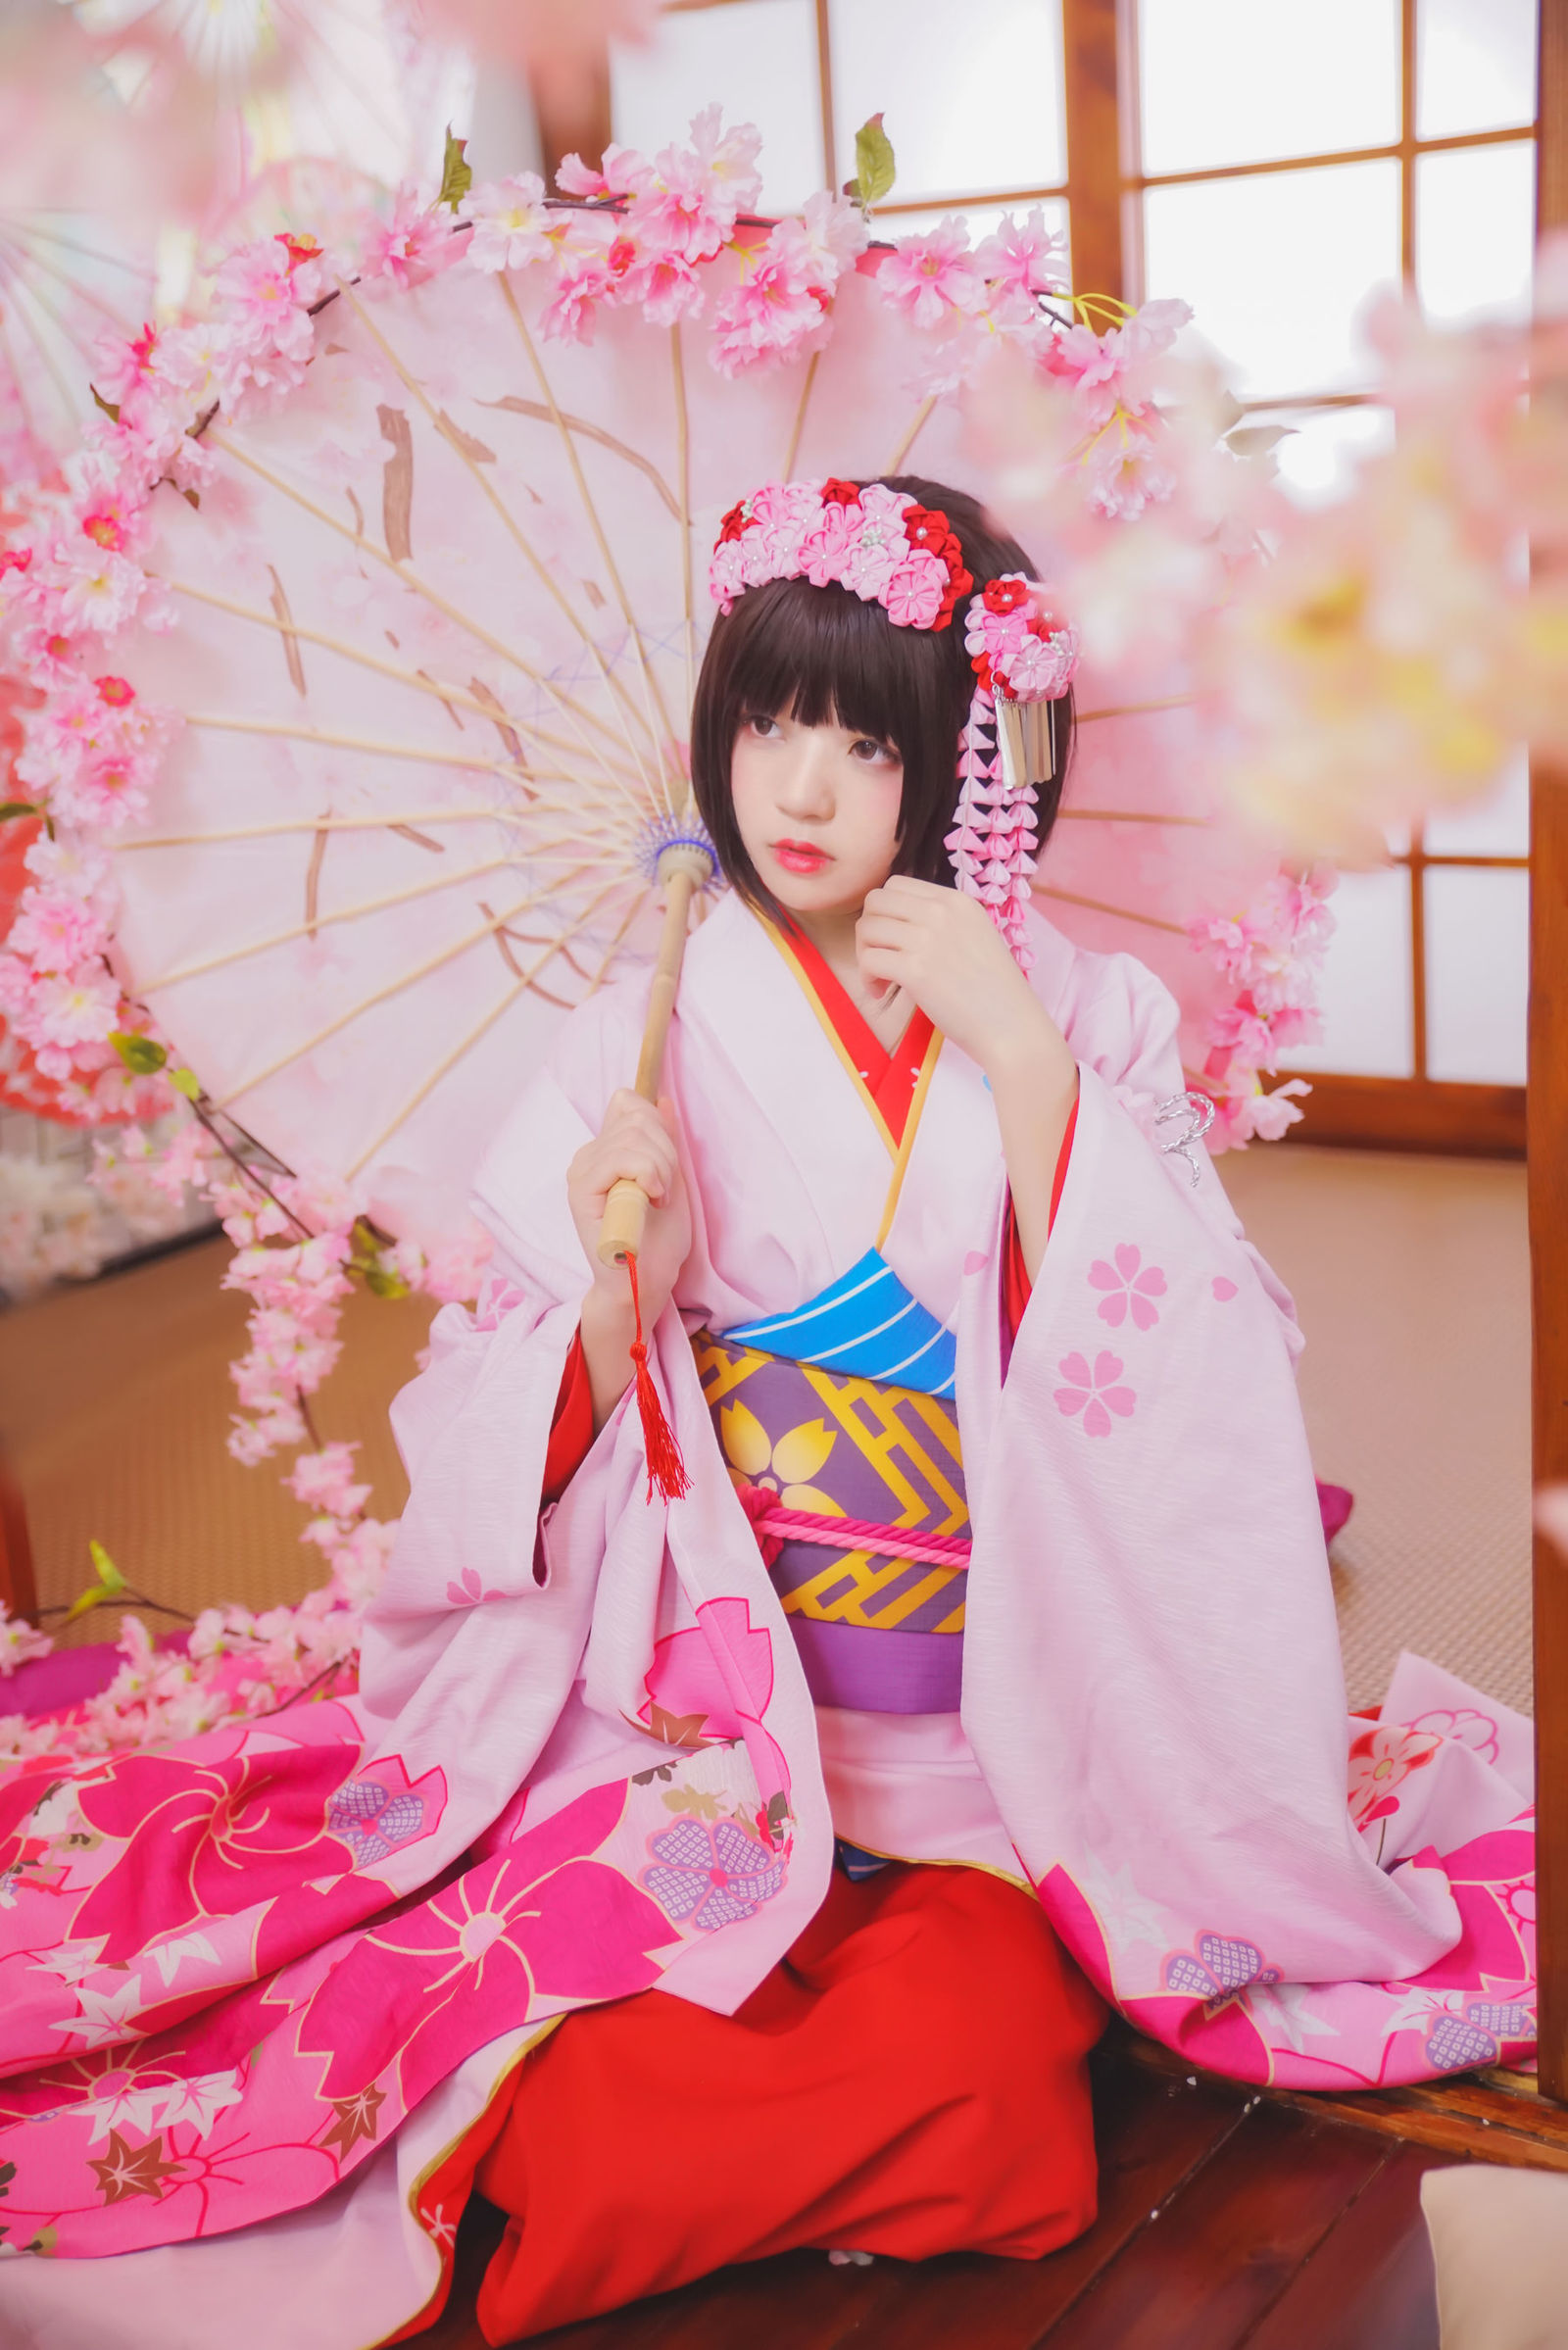 日本少女经典和服唯美制服丝袜超清图片